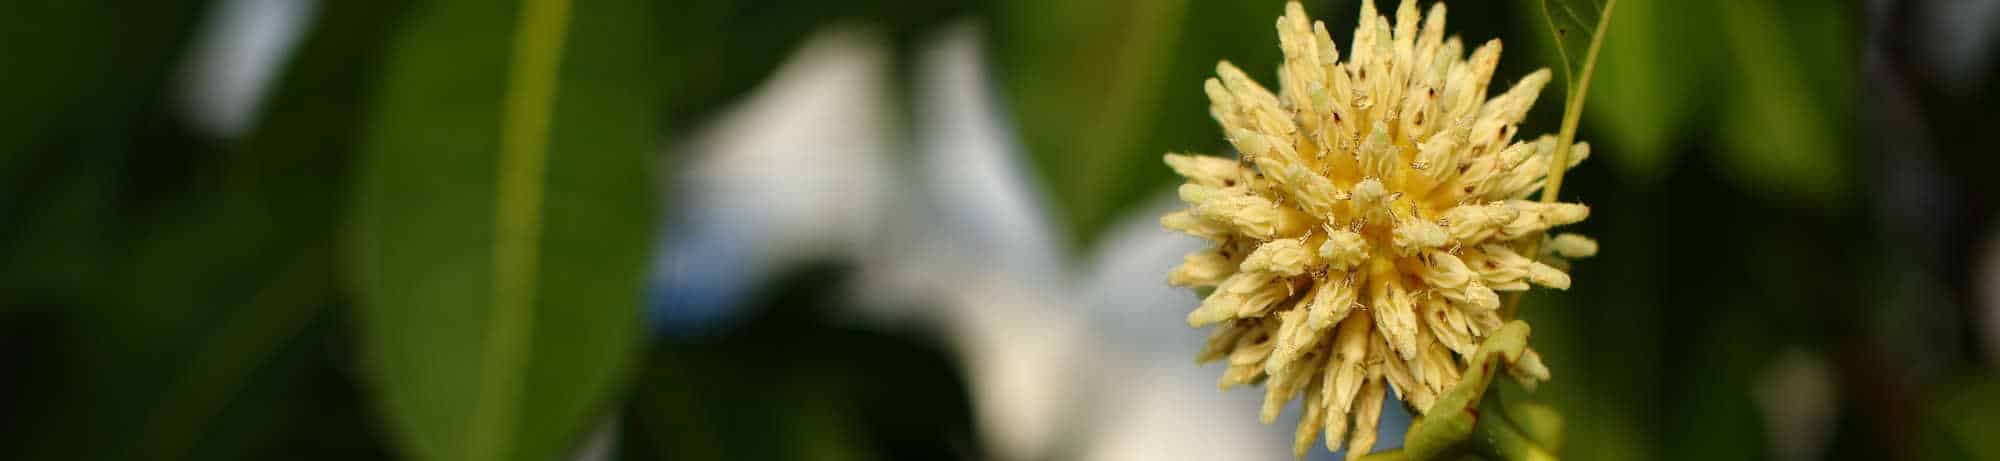 image of kratom flower